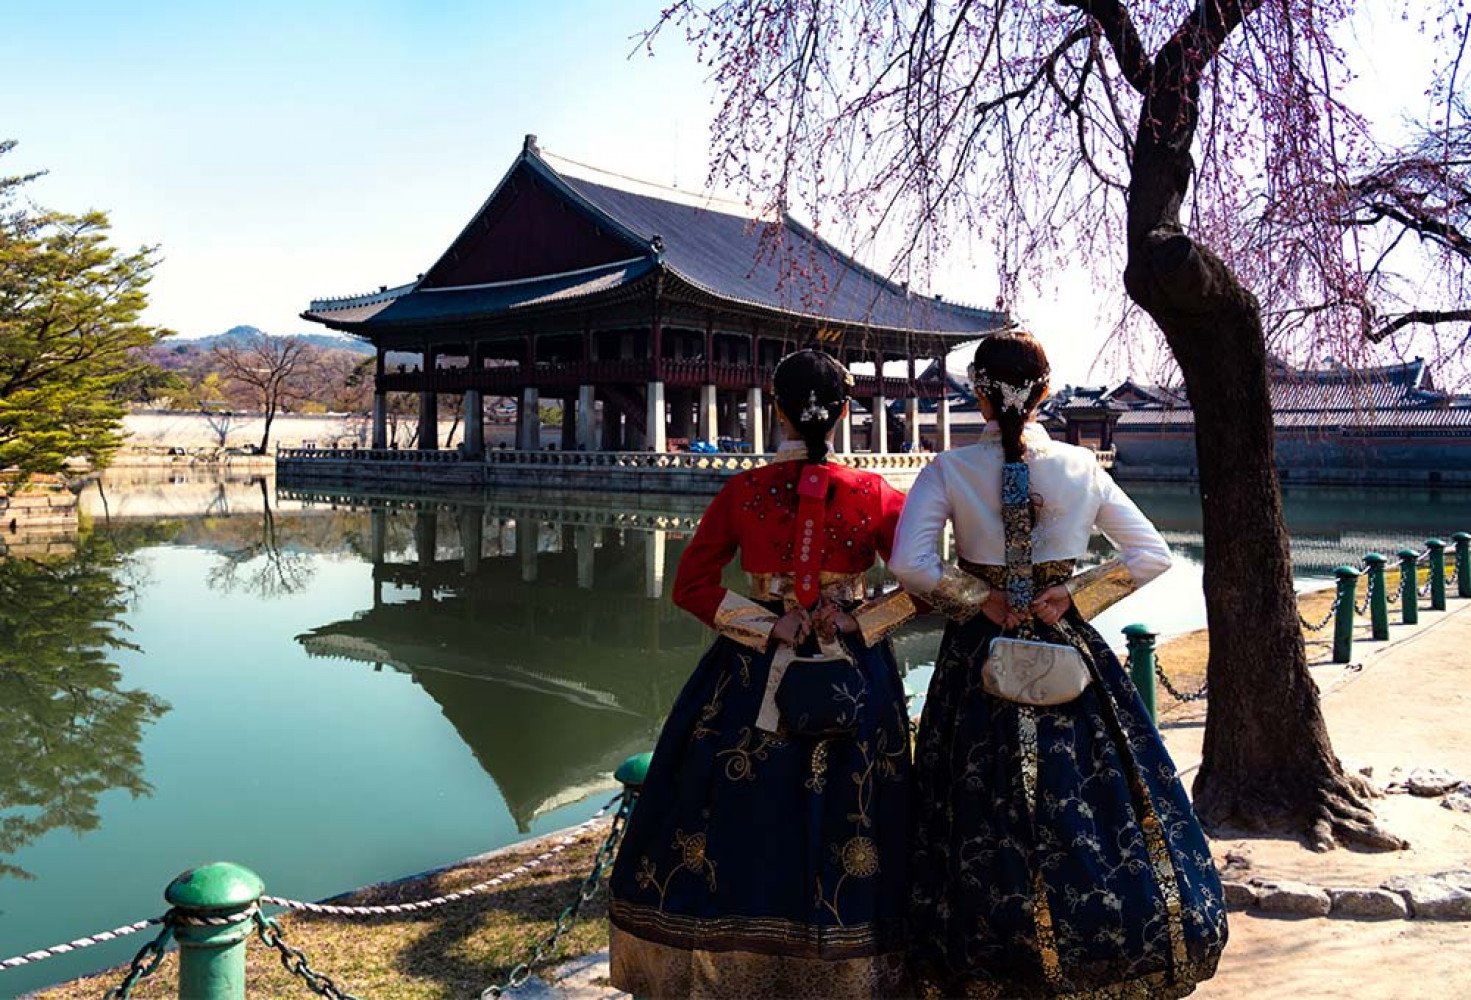 Kore'nin geleneksel kıyafeti Hanbok nedir?